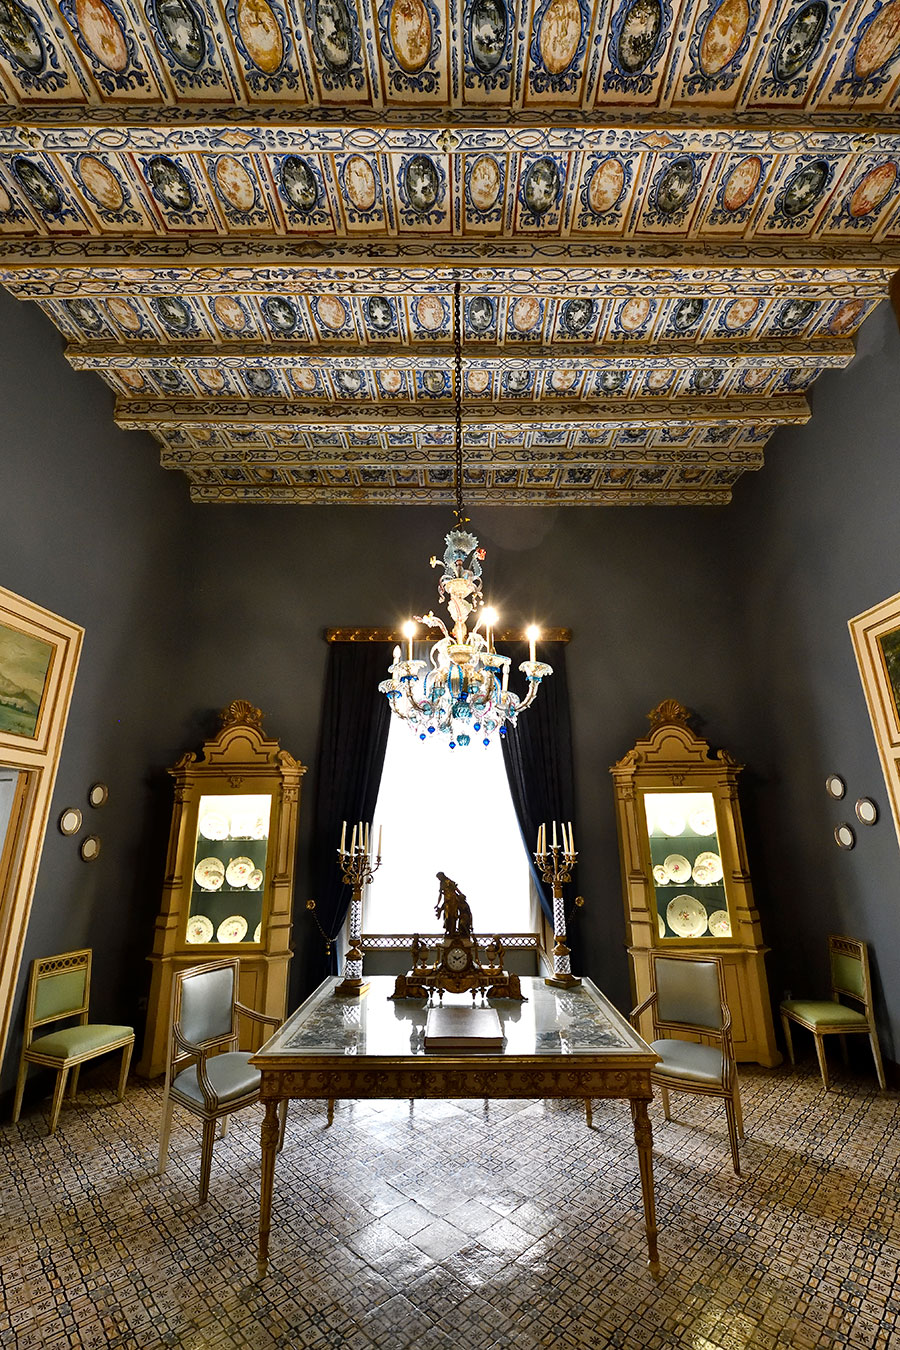 18世紀の華麗なフレスコ画や木製格天井が館内を飾る。